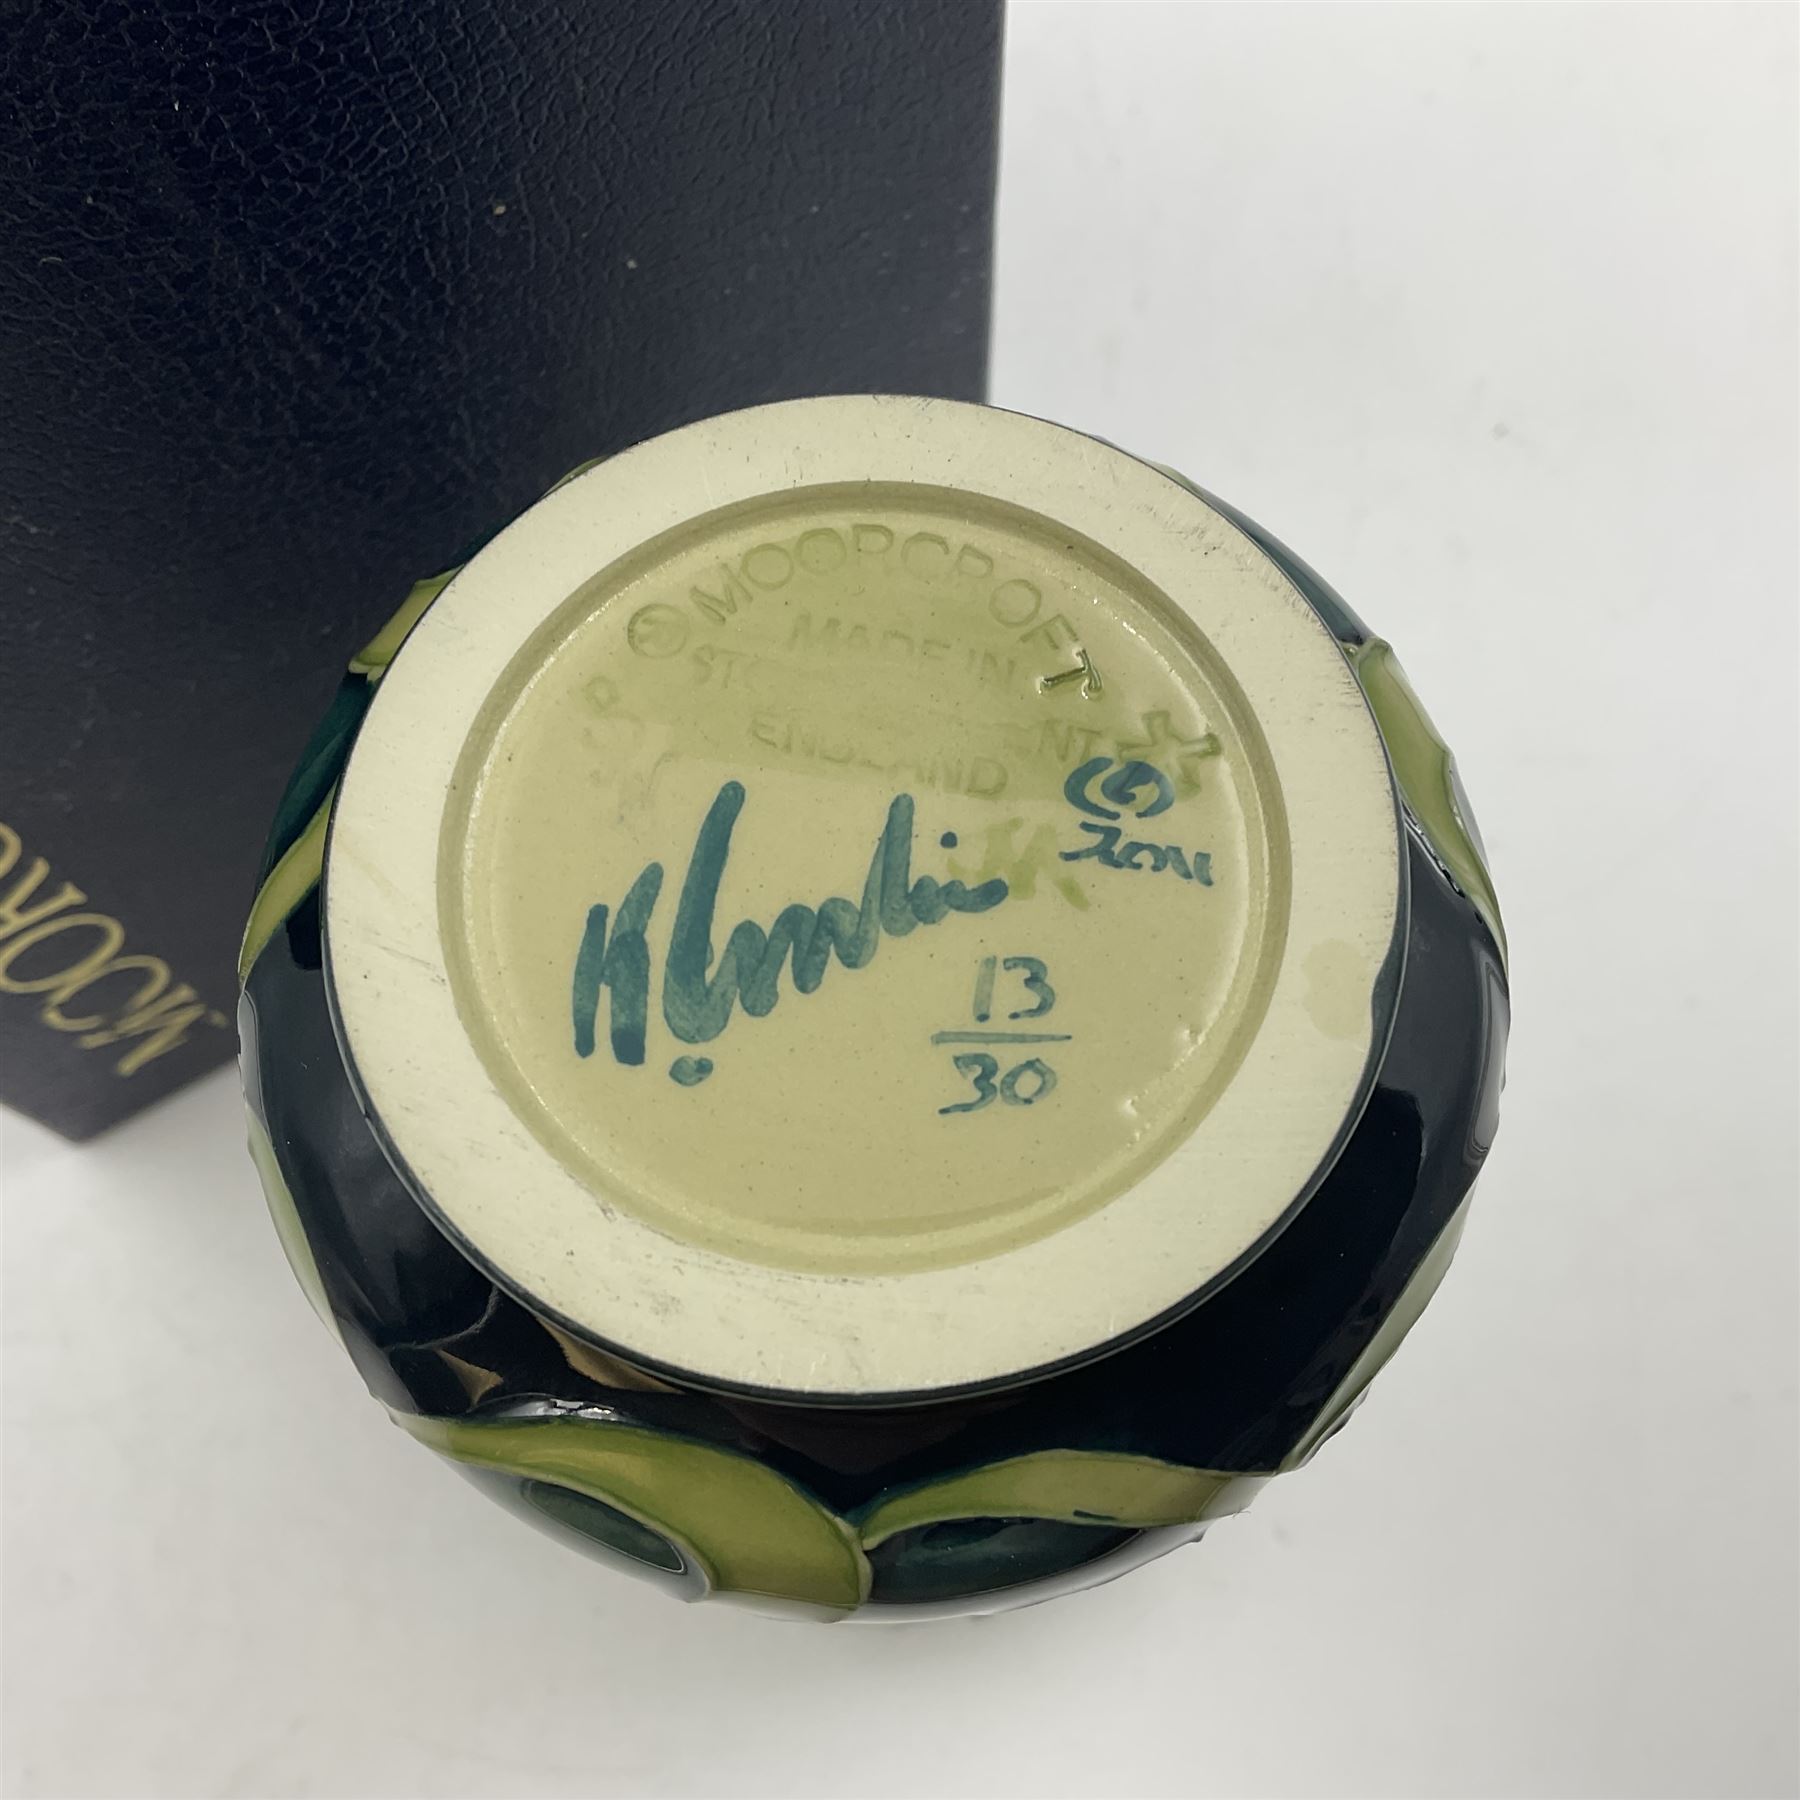 Moorcroft limited edition vase - Image 5 of 5